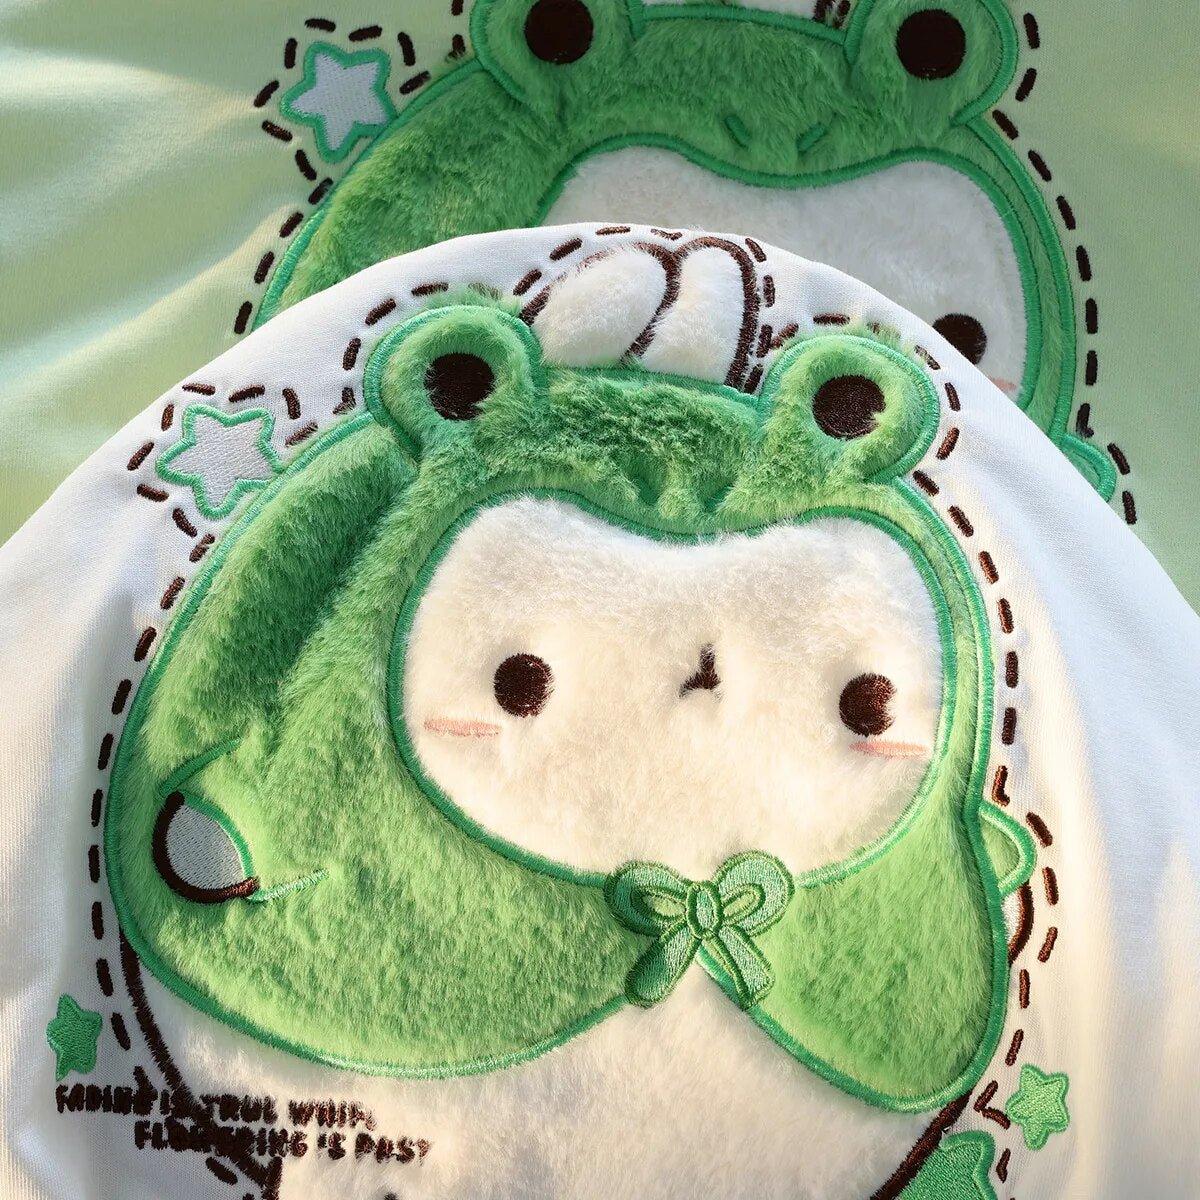 Kawaii Flocked Frog T-Shirt - Kawaii Side